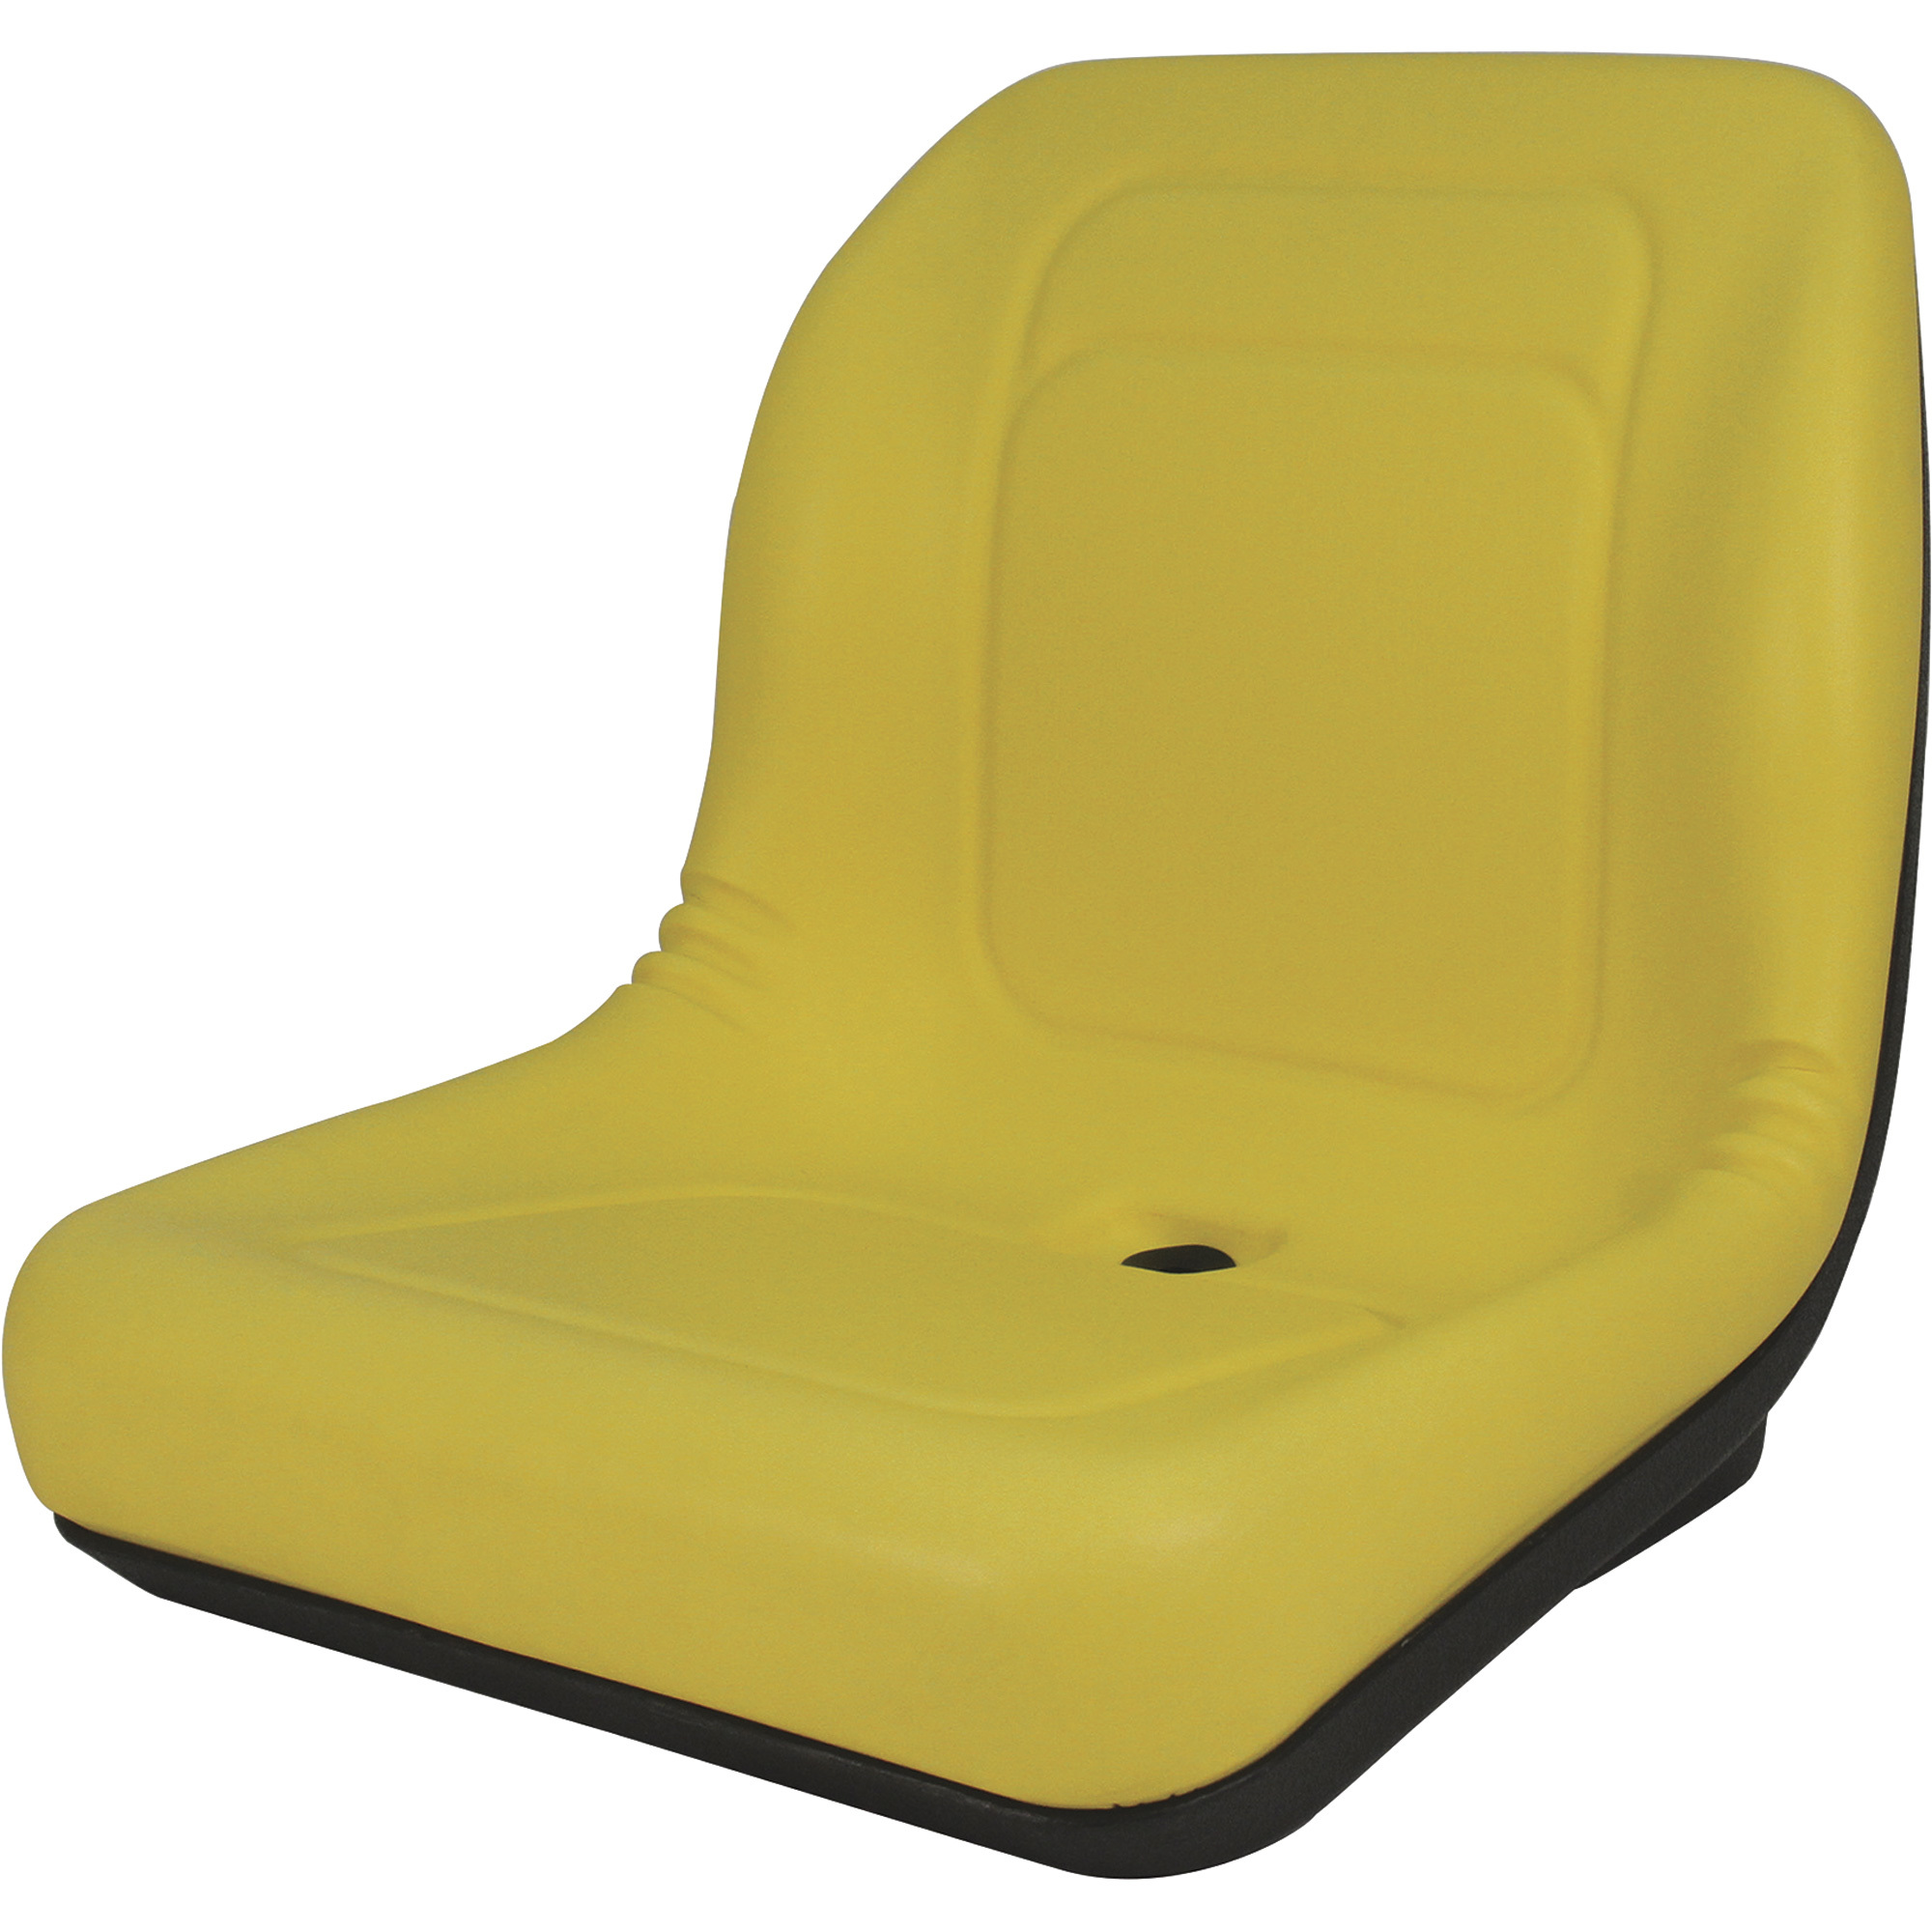 A&I Universal Vinyl Bucket Seat â Yellow, Model #LGT100YL